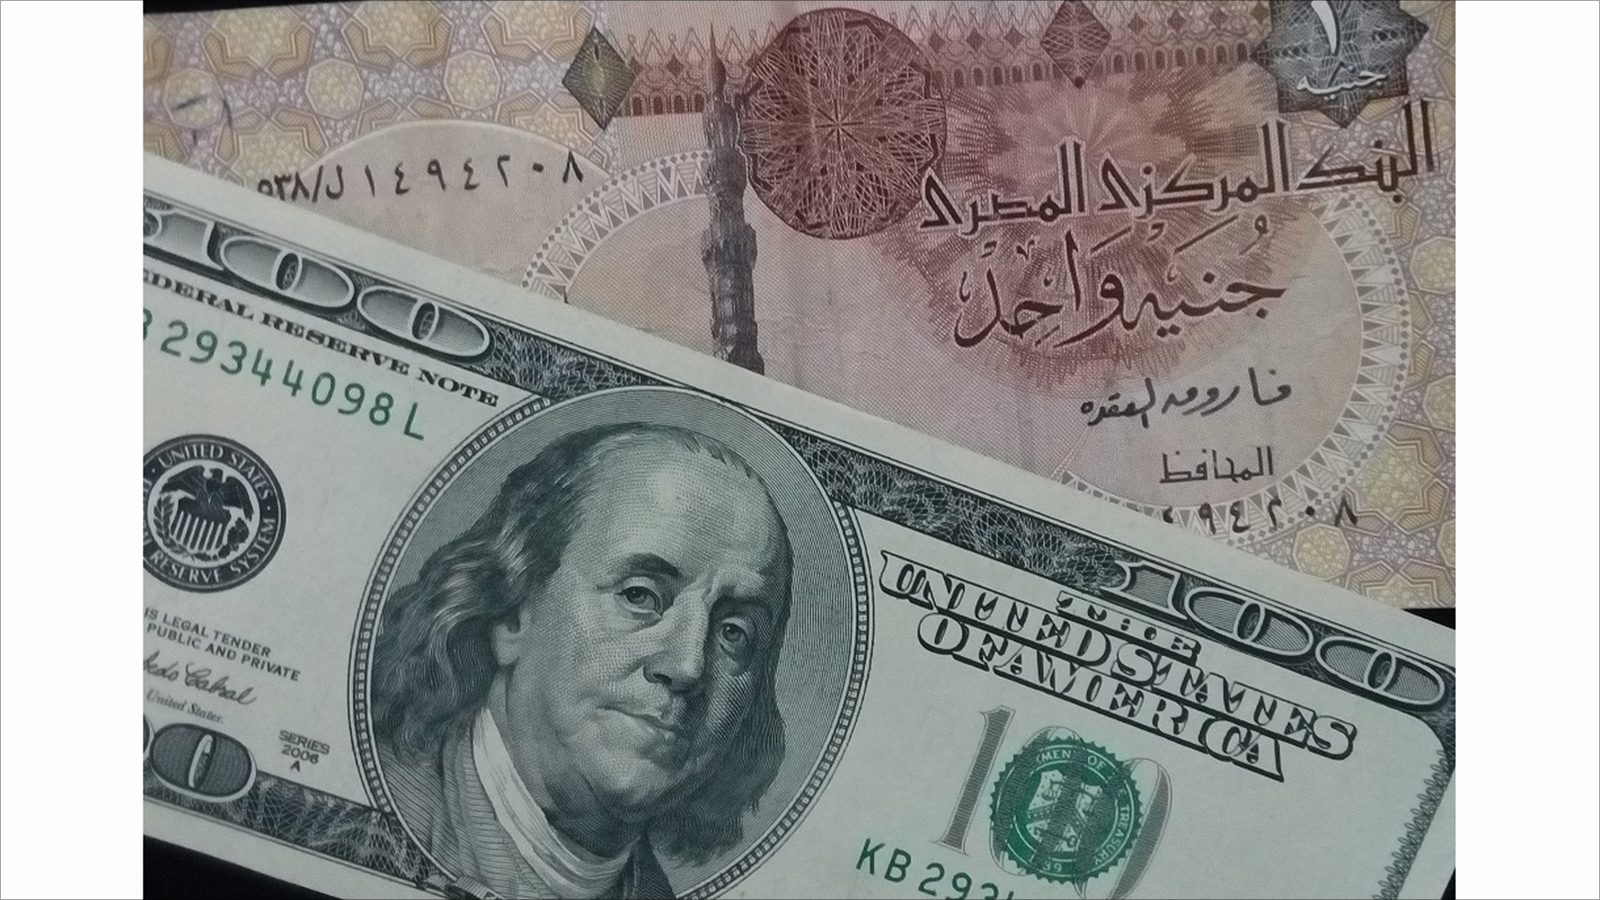 ‪التضخم قفز بعد تحرير سعر صرف الجنيه‬ التضخم قفز بعد تحرير سعر صرف الجنيه